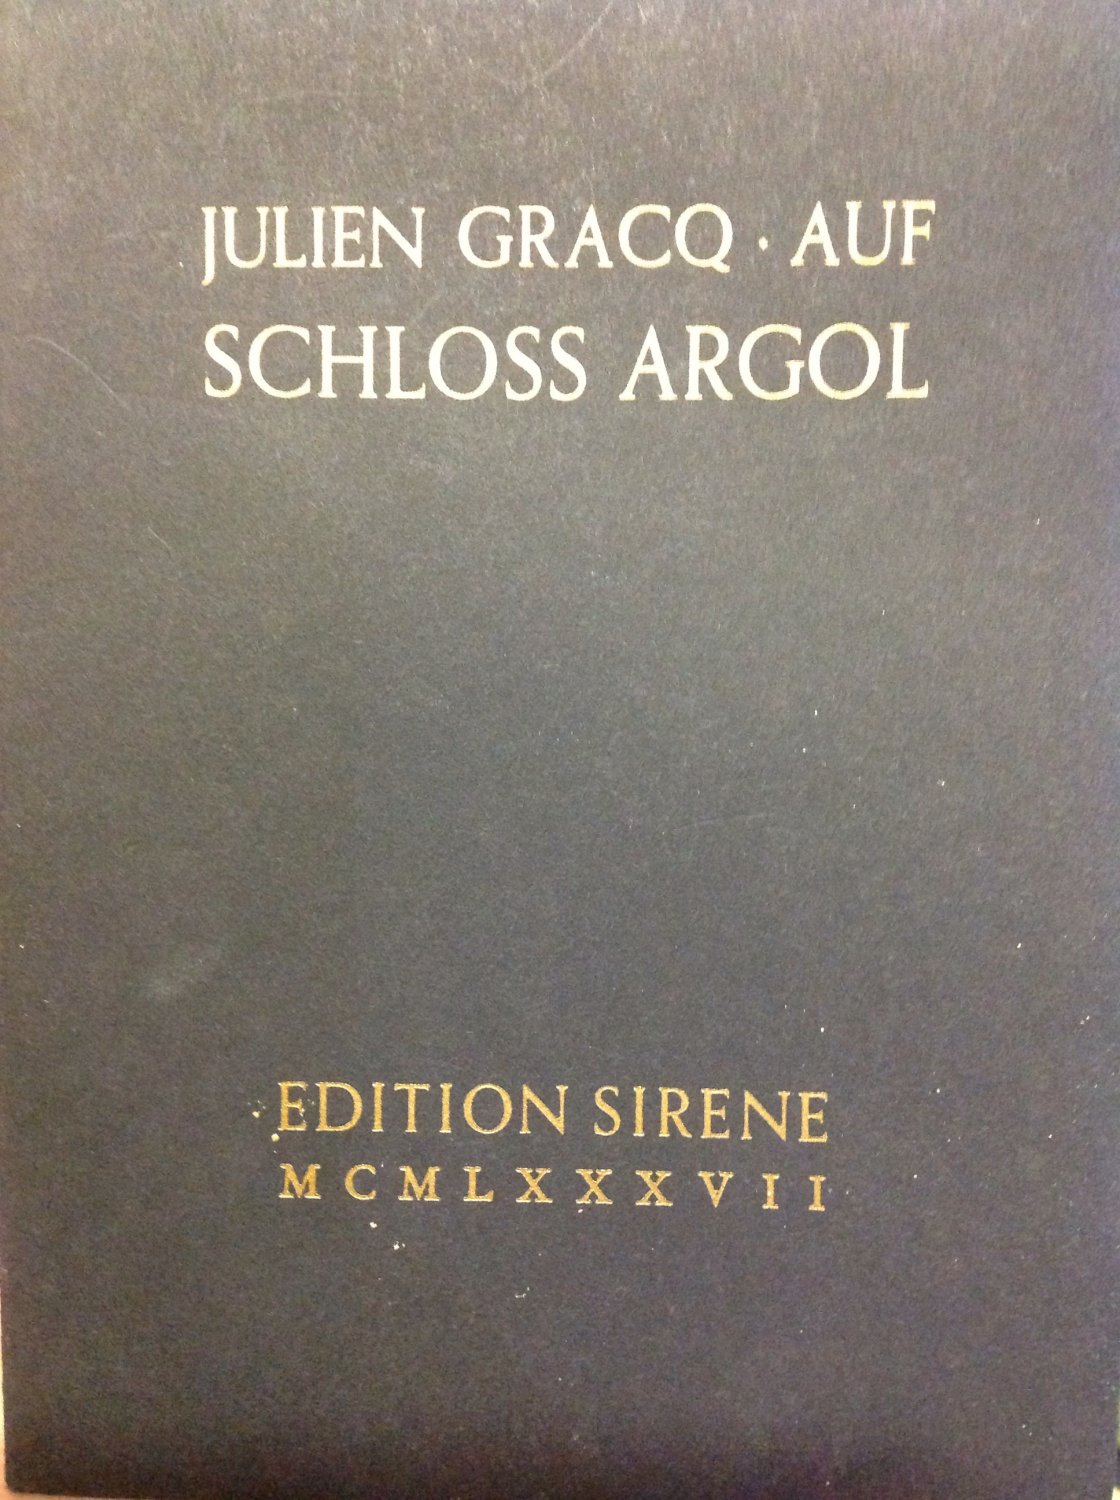 Julien-Gracq+Schloss-Argol.jpg